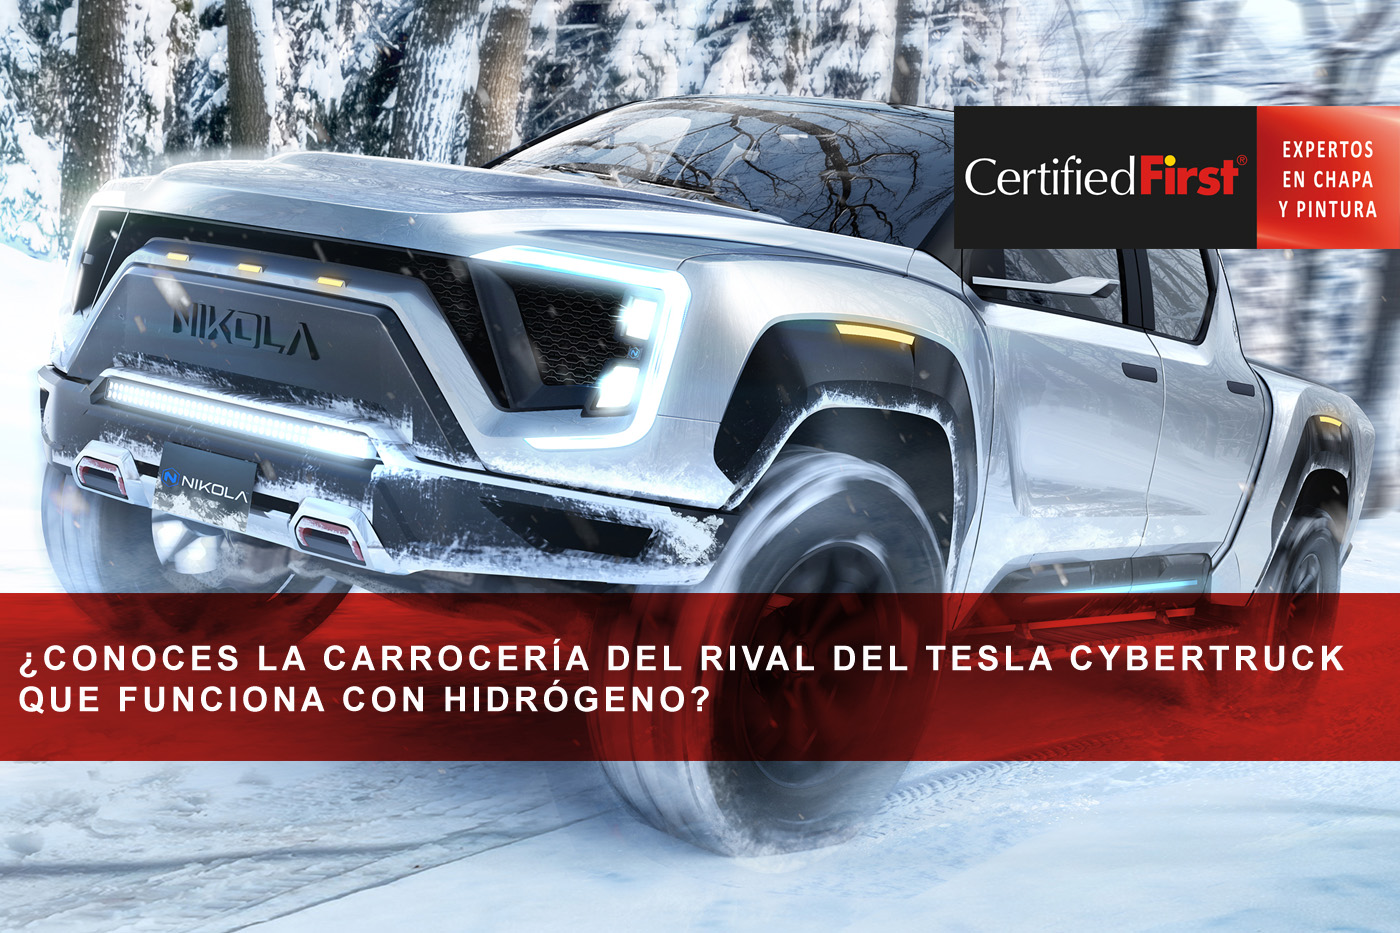 ¿Conoces la carrocería del rival del Tesla Cybertruck que funciona con hidrógeno?